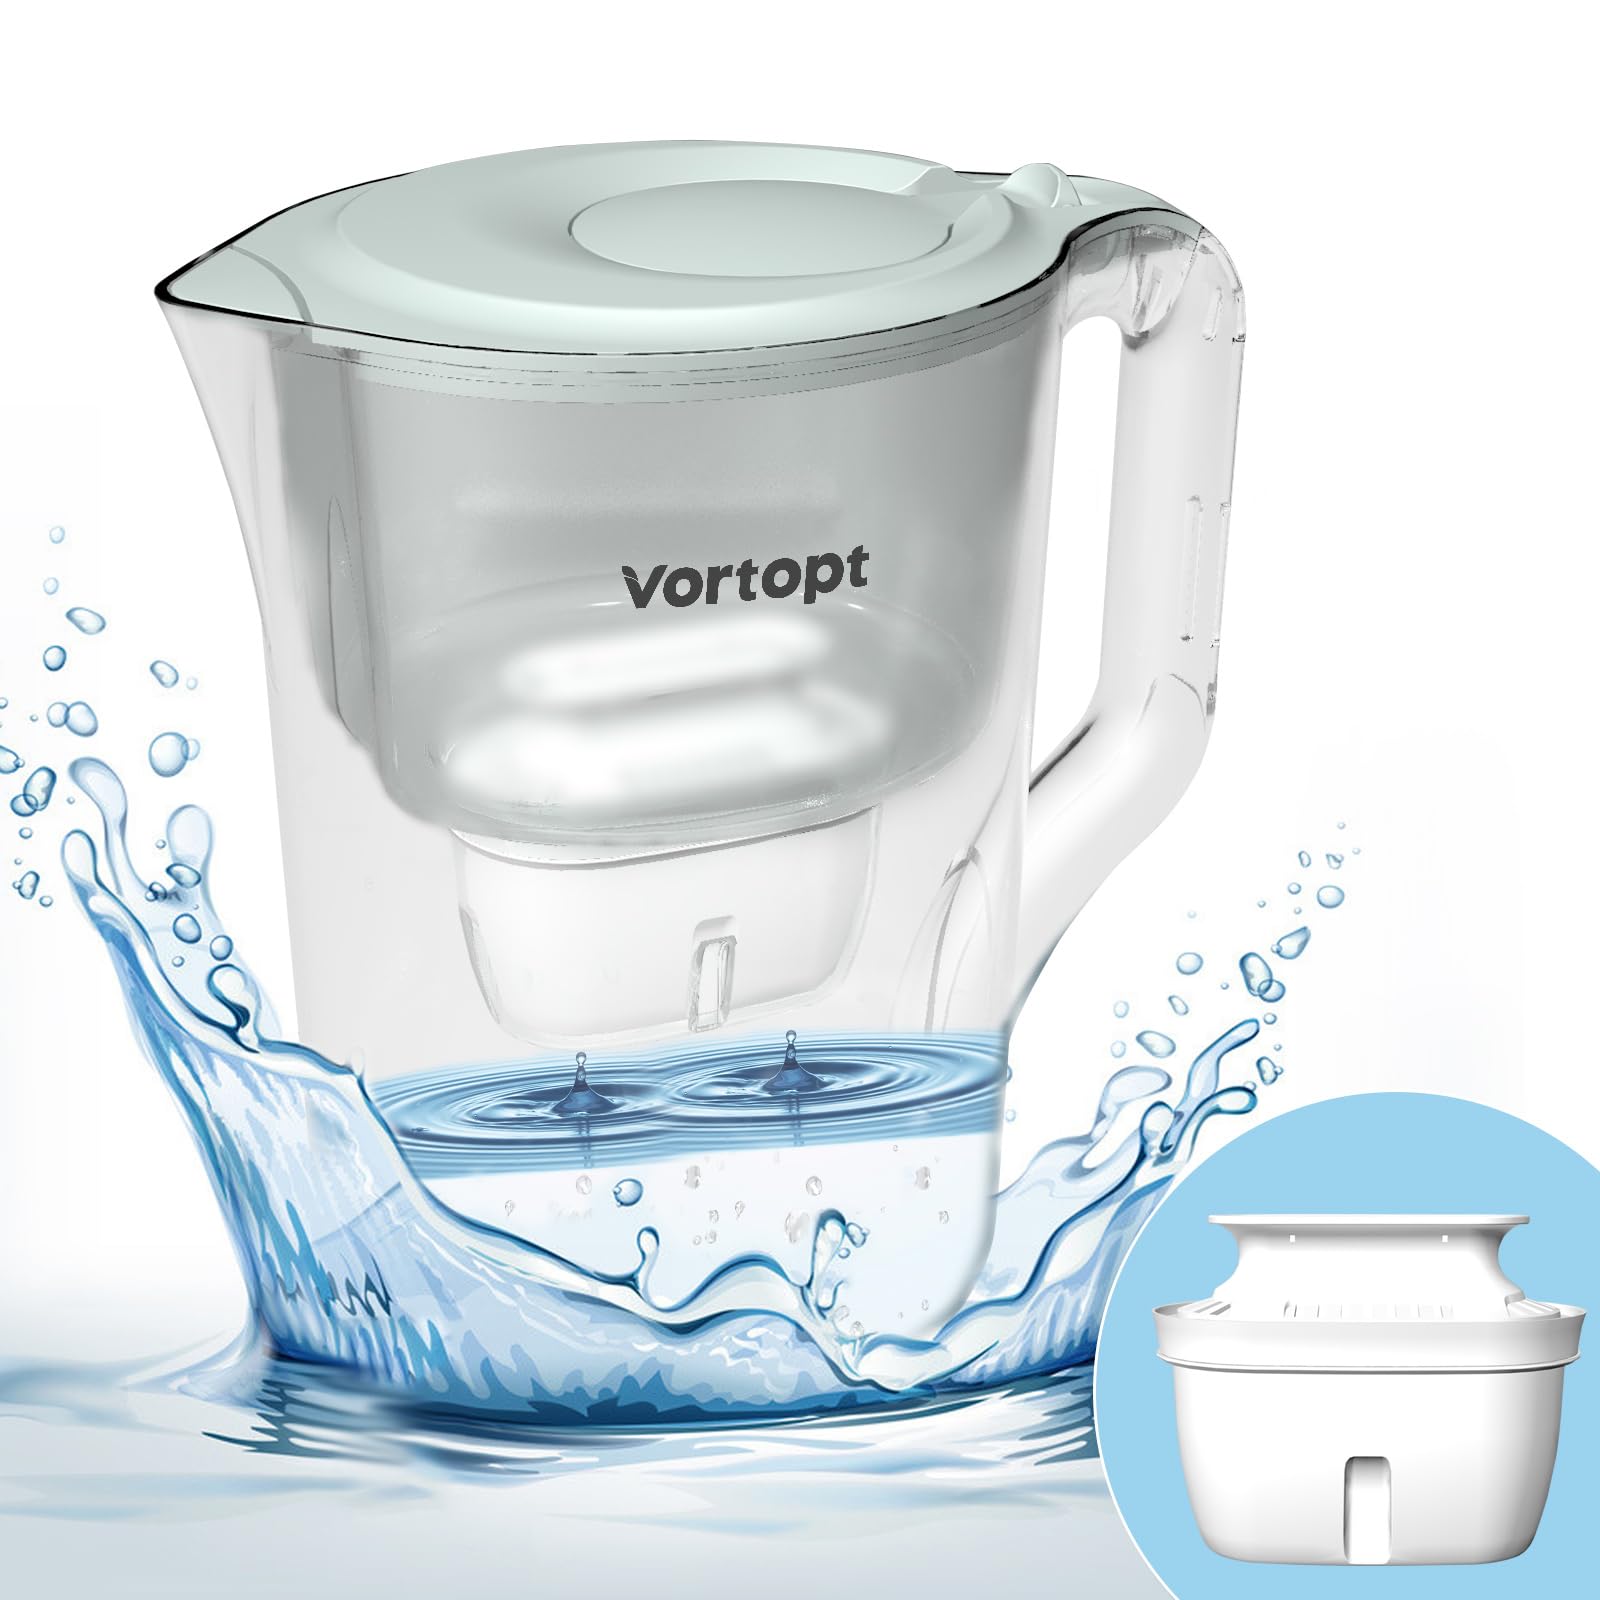 Vortopt Water Filter Pitcher - L2-White